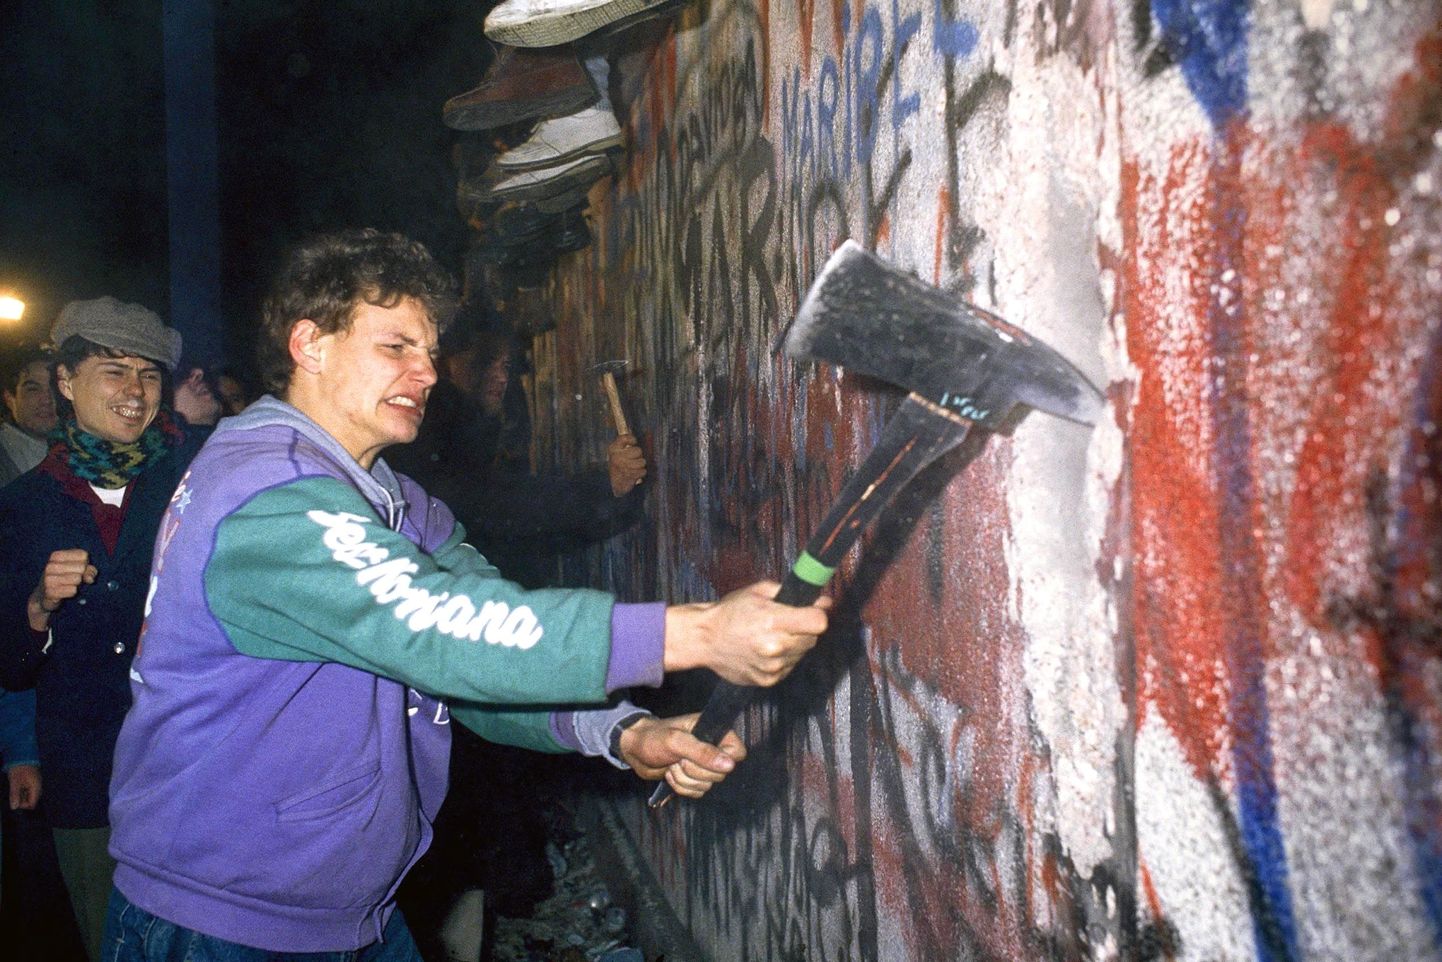 Idasakslased lõhkumas 9. novembril 1989 Berliini müüri